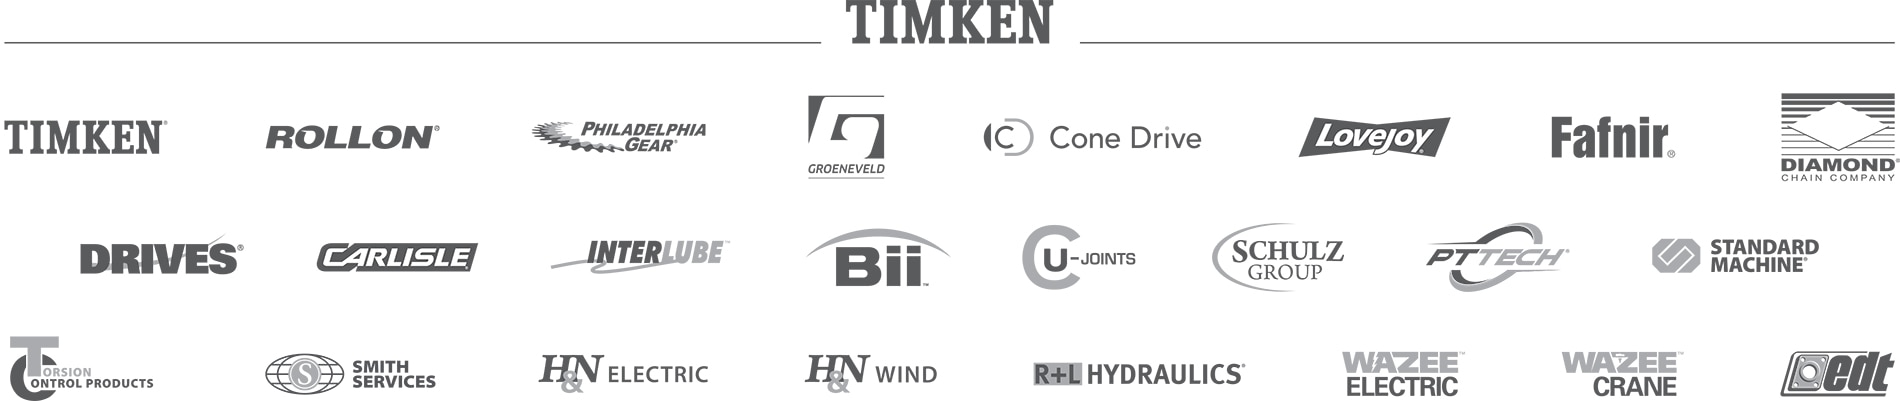 Timken Brands